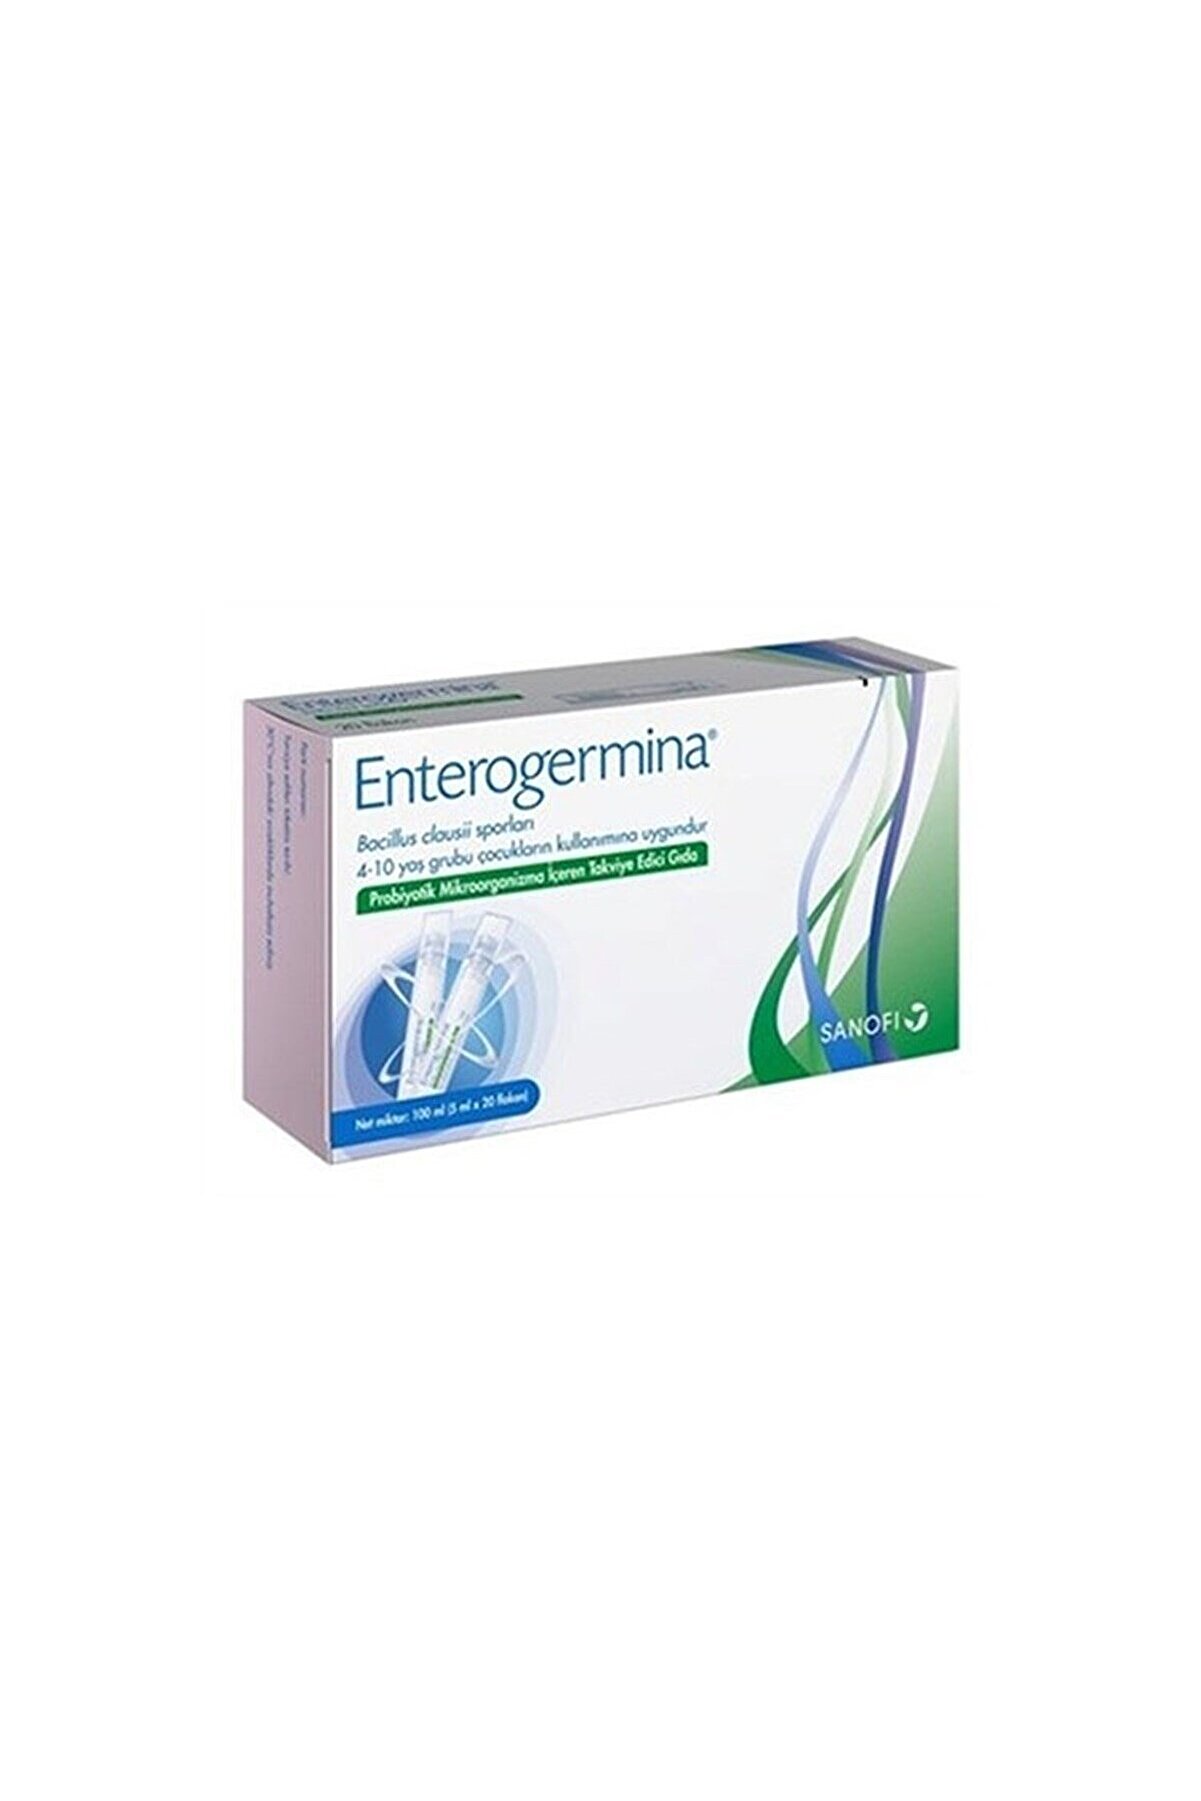 Enterogermina 5 ml Oral 20 Flk